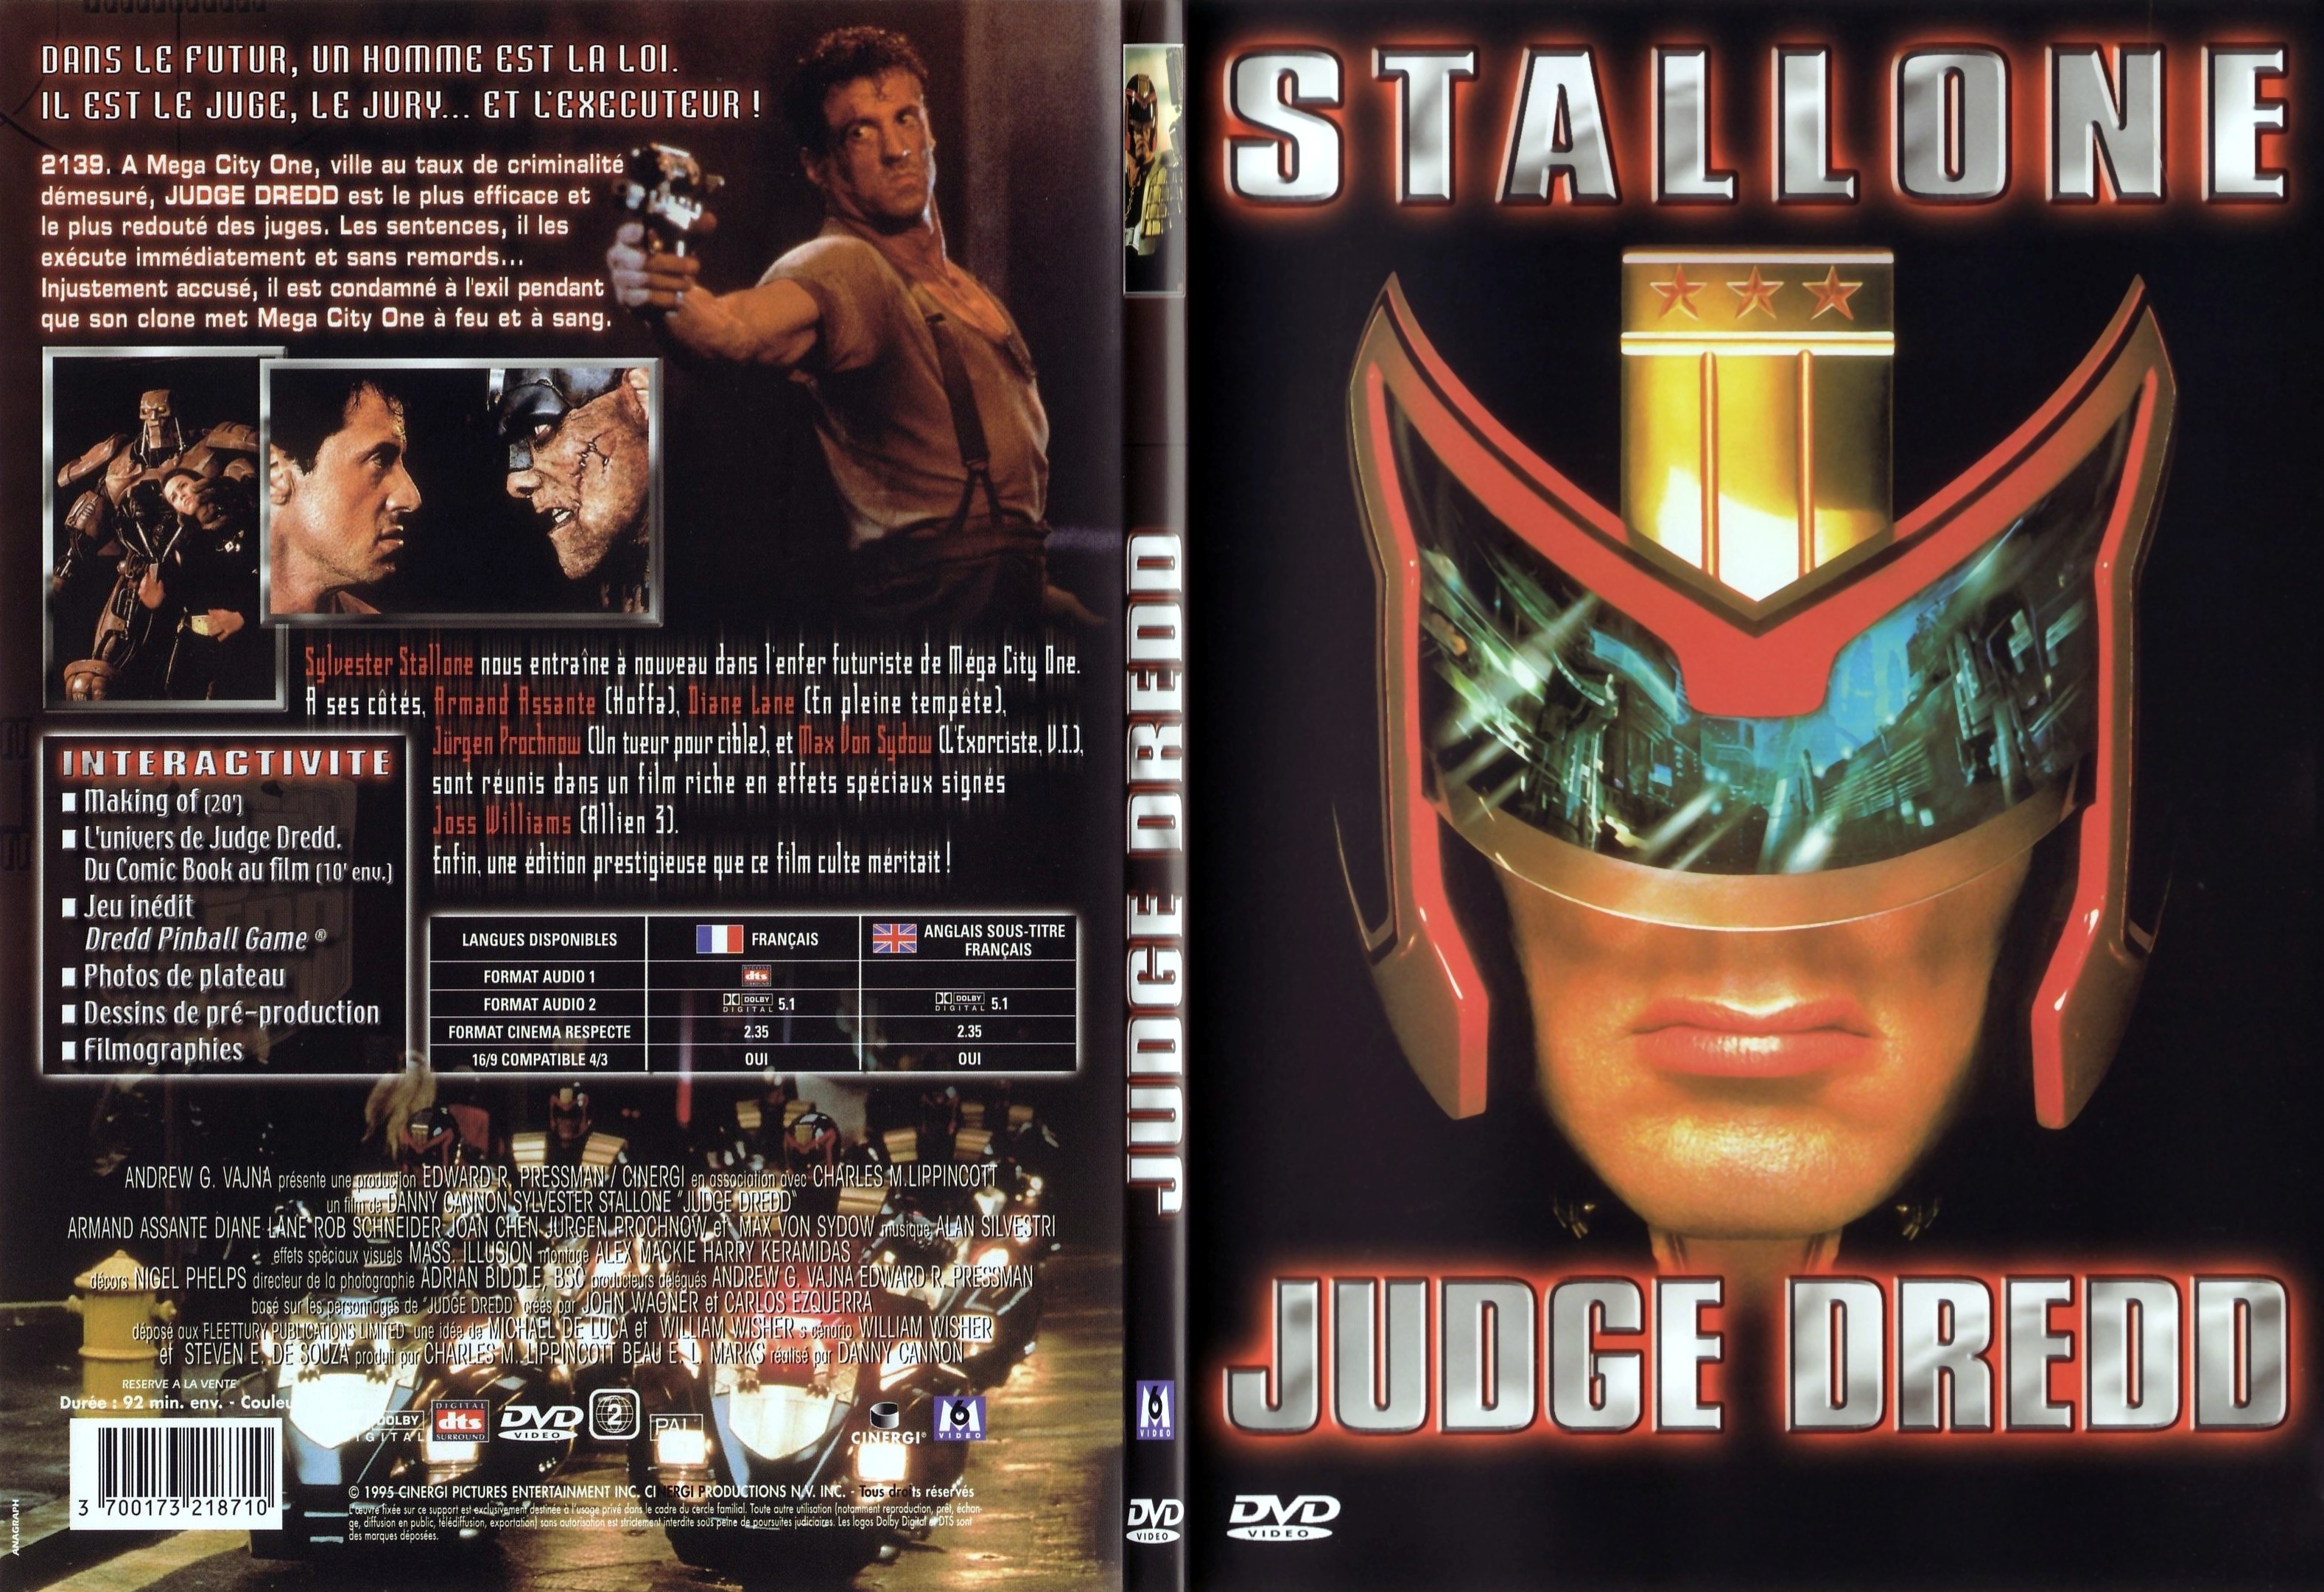 Jaquette DVD Judge Dredd - SLIM v2